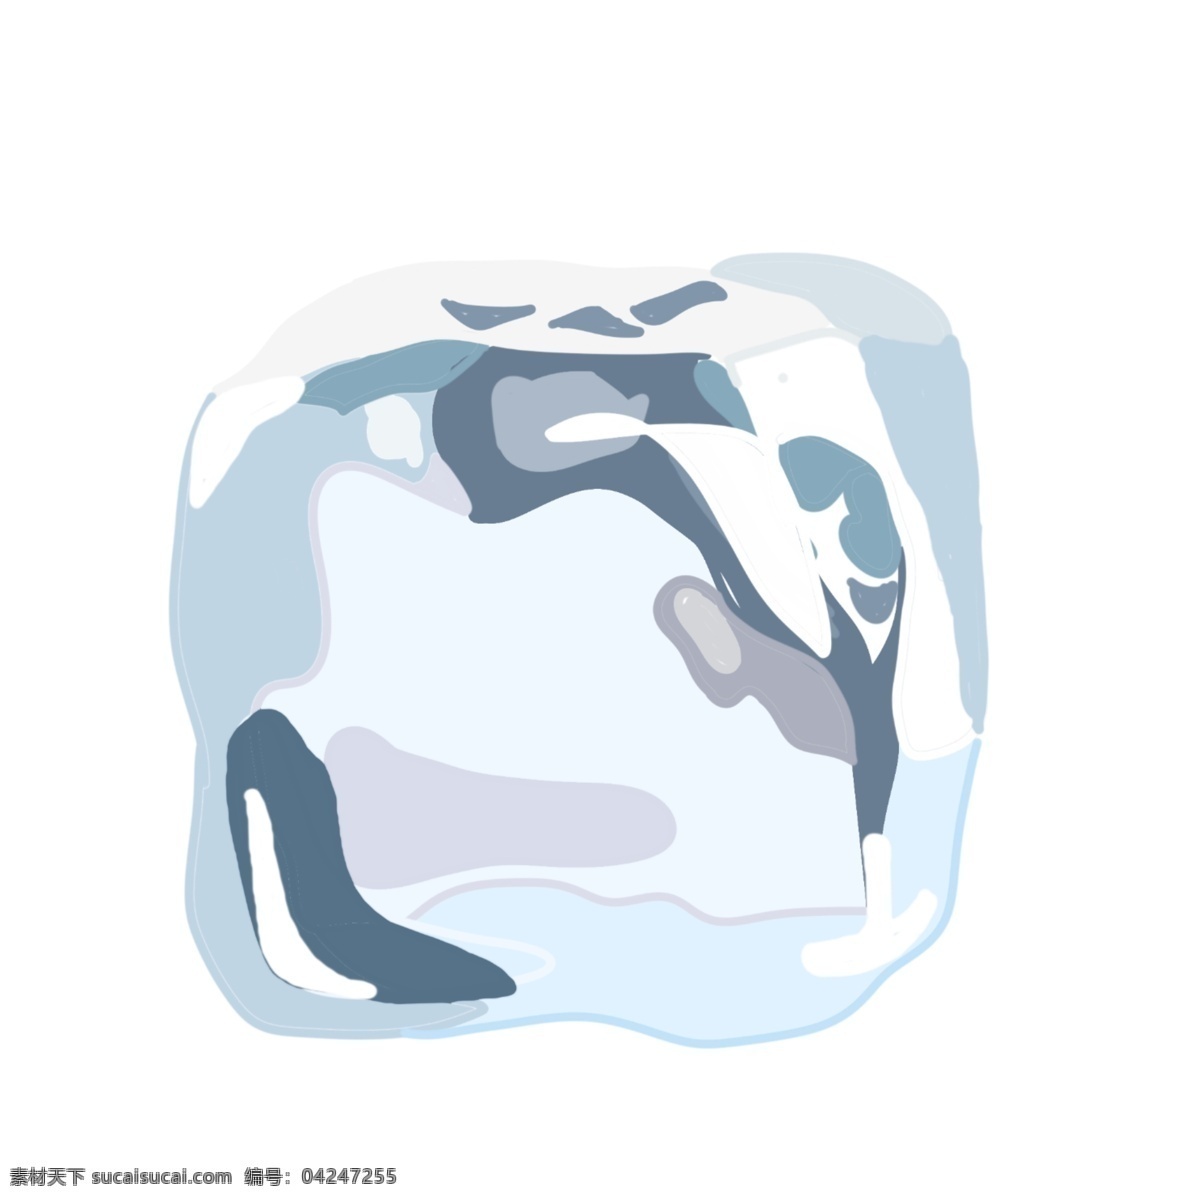 一块 立体 冰块 插图 透明冰块 立体冰块 一块冰块 冰 水 立体冰块插图 仿真冰块 夏季 清凉冰块